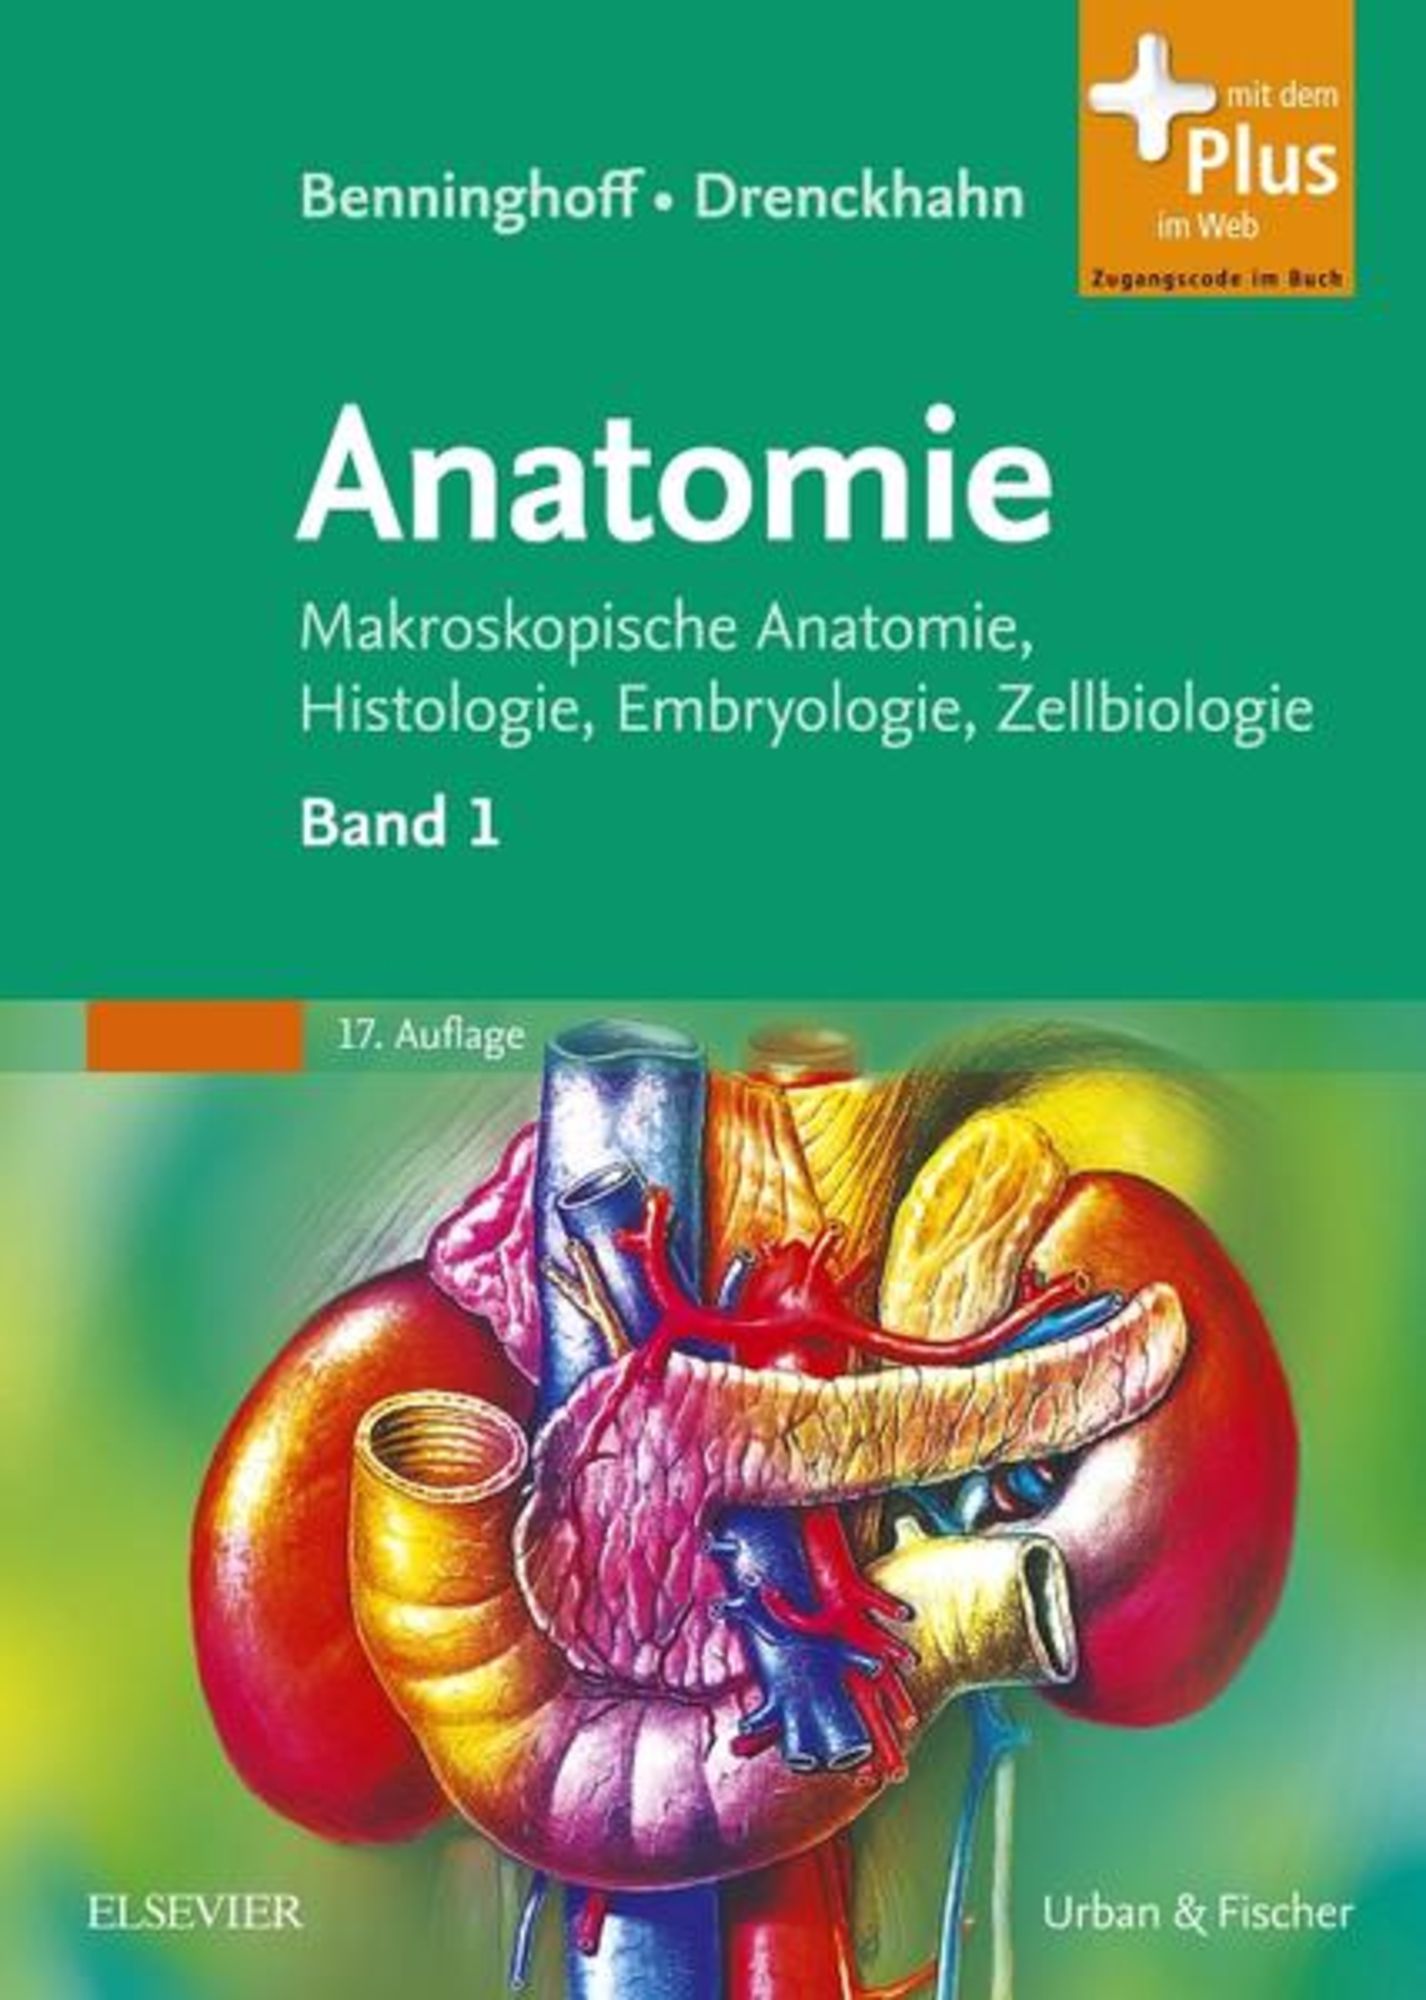 Benninghoff, Drenckhahn, Anatomie' von 'Alfred Benninghoff' - Buch -  '978-3-437-42342-0'